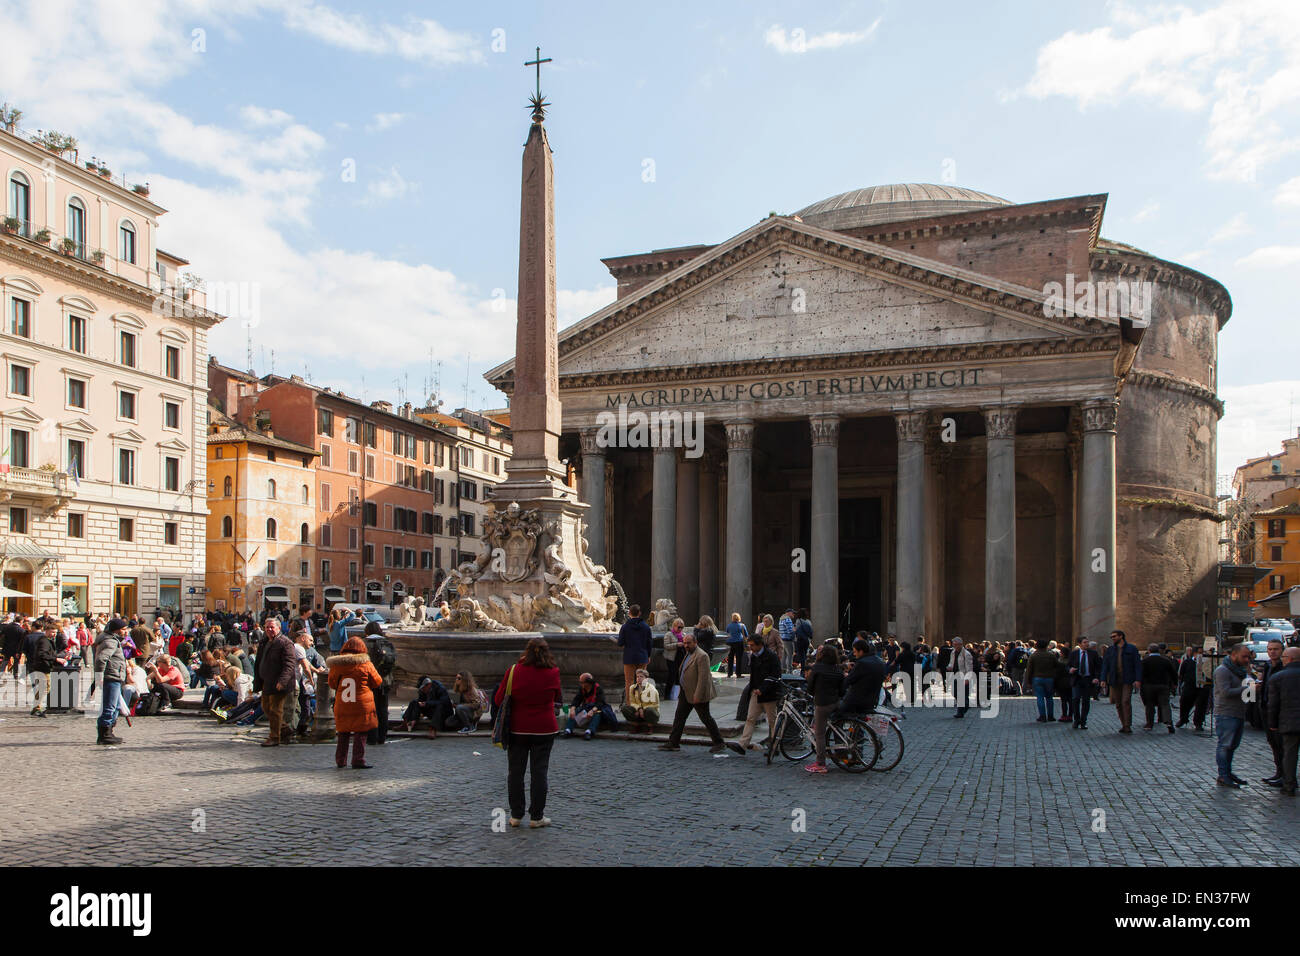 The Pantheon Basilica in the Piazza della Rotonda, Rome, Italy Stock Photo